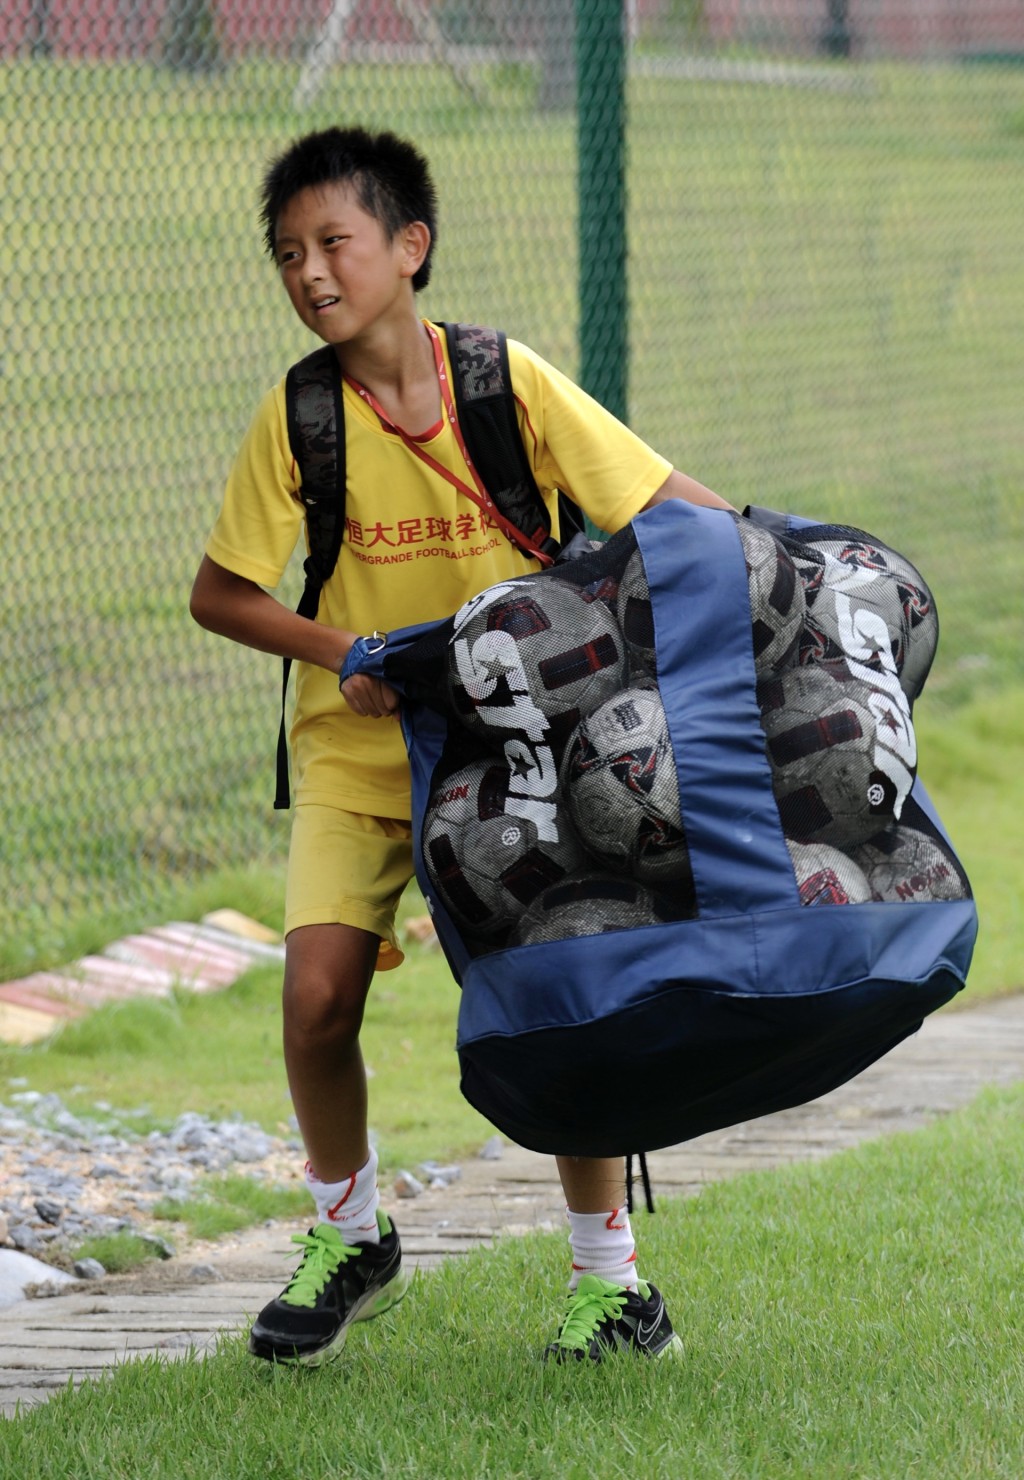 一名小球员在训练结束后搬运一袋足球。 新华社资料图